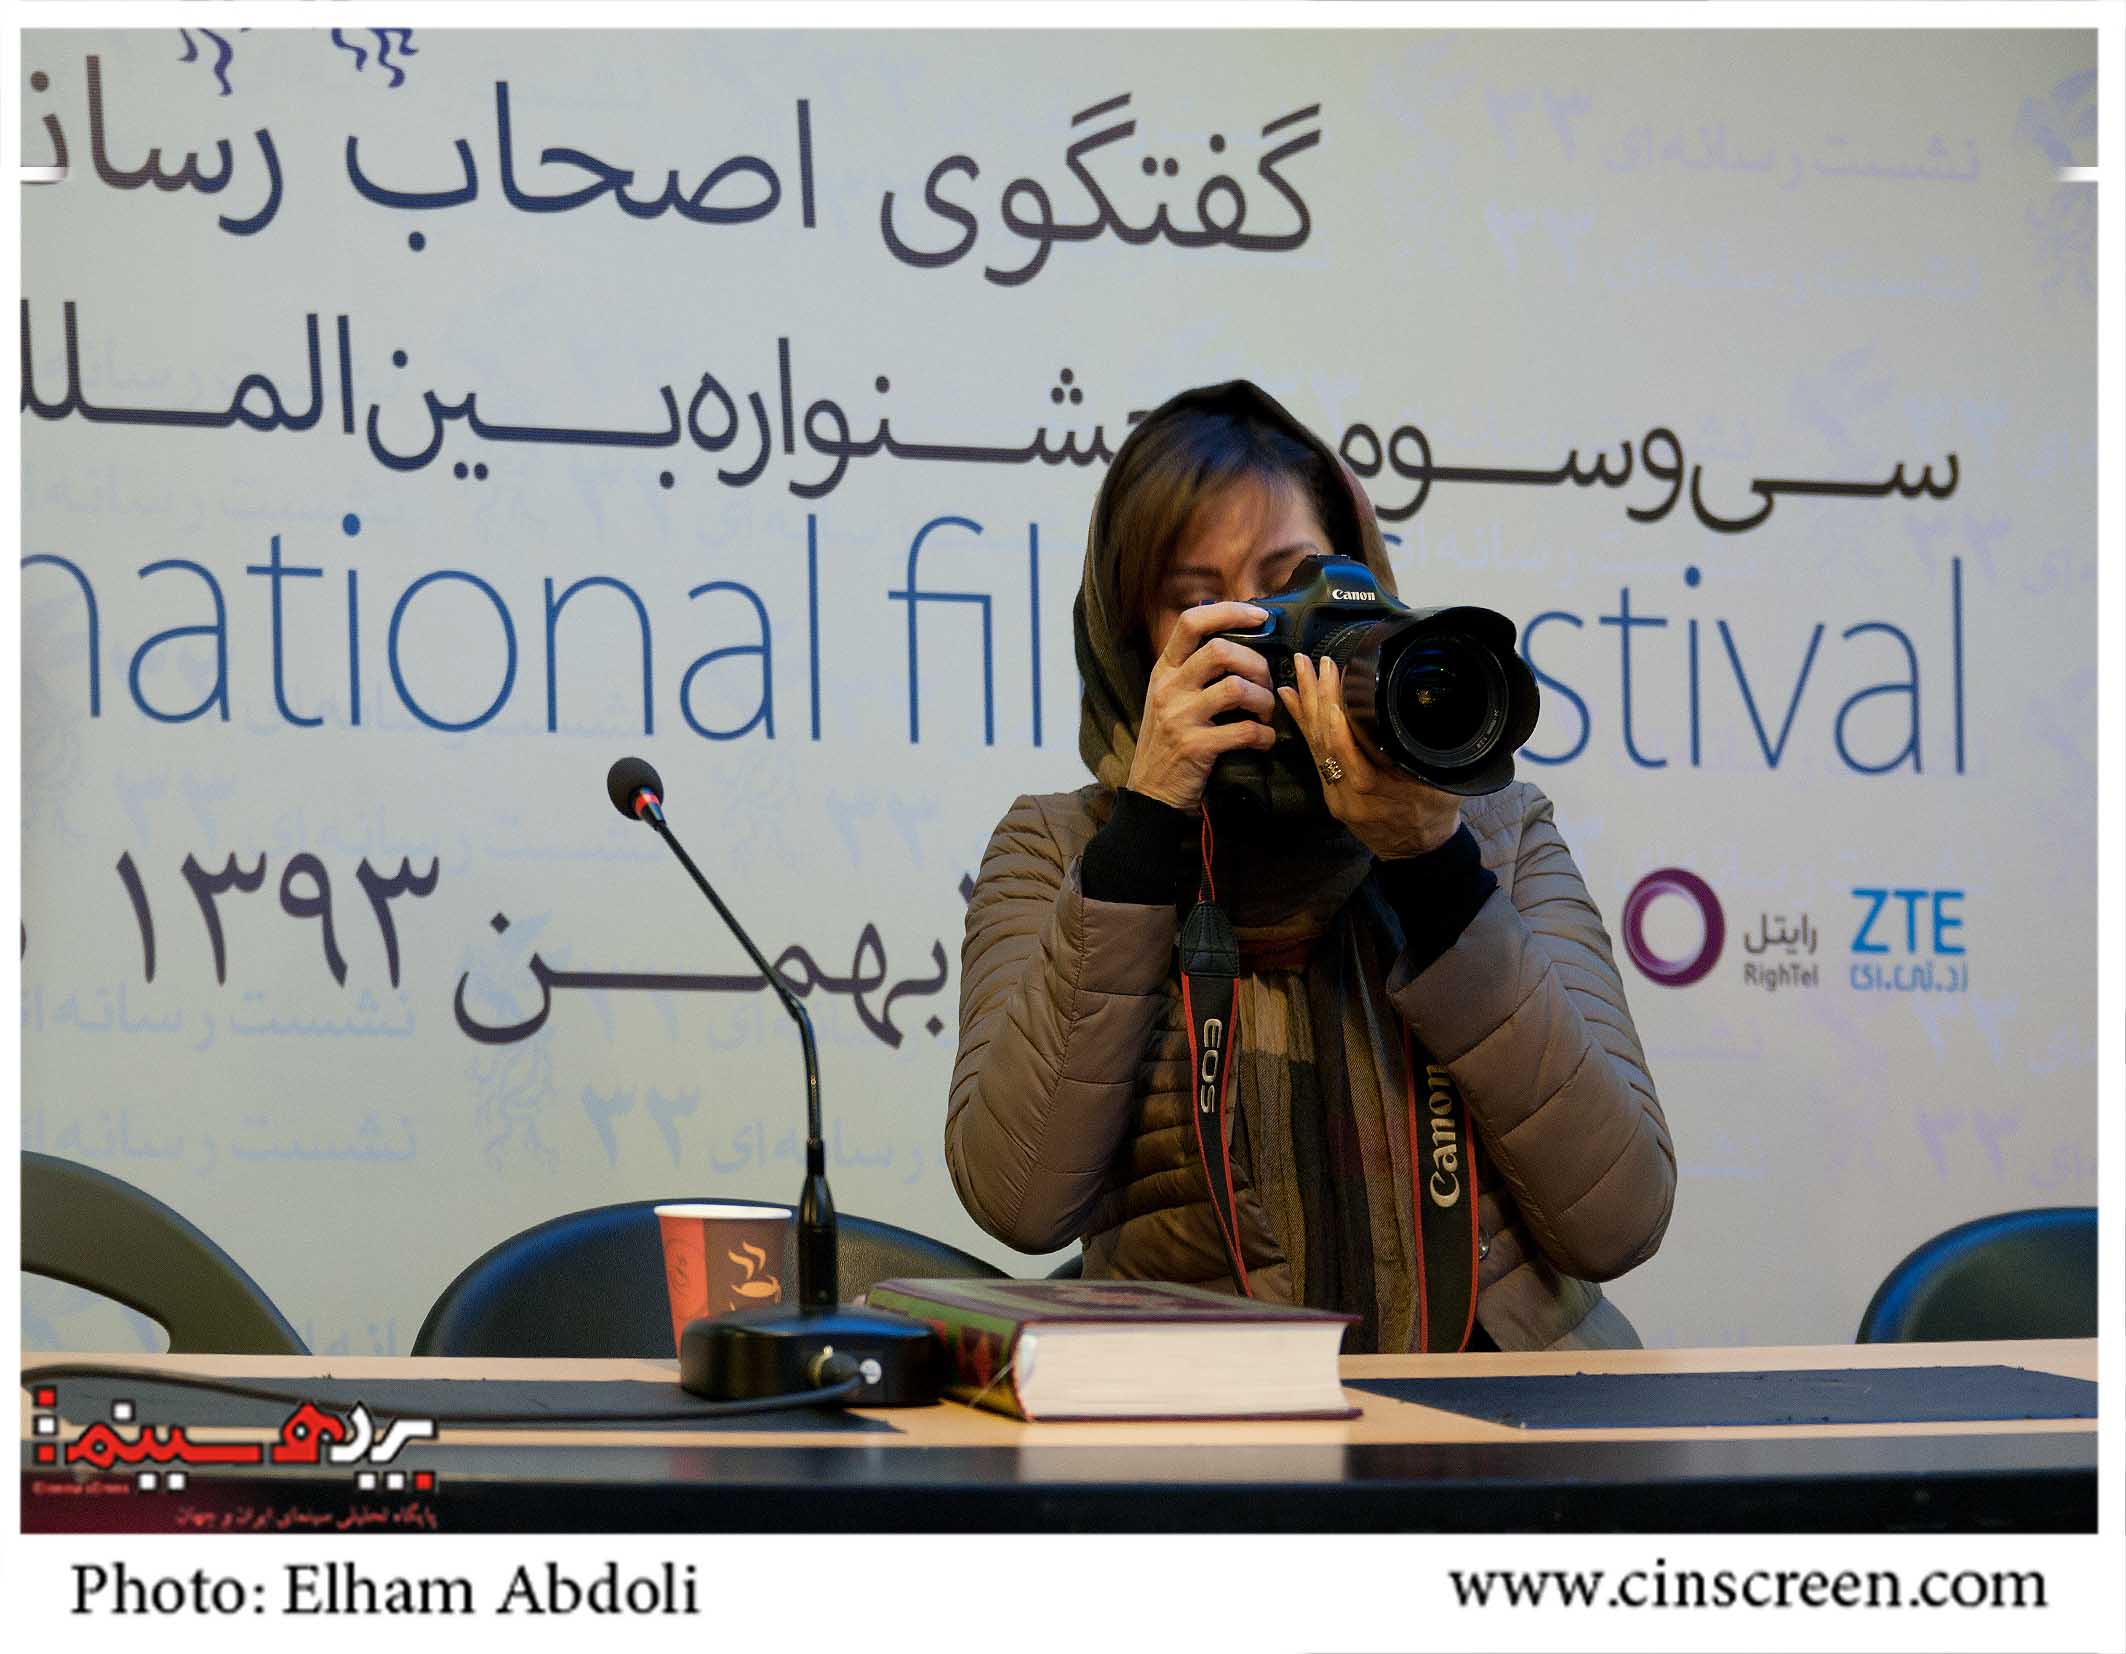 مهتاب کرامتی در نشست رسانه ای فیلم ارغوان. عکس از الهام عبدلی